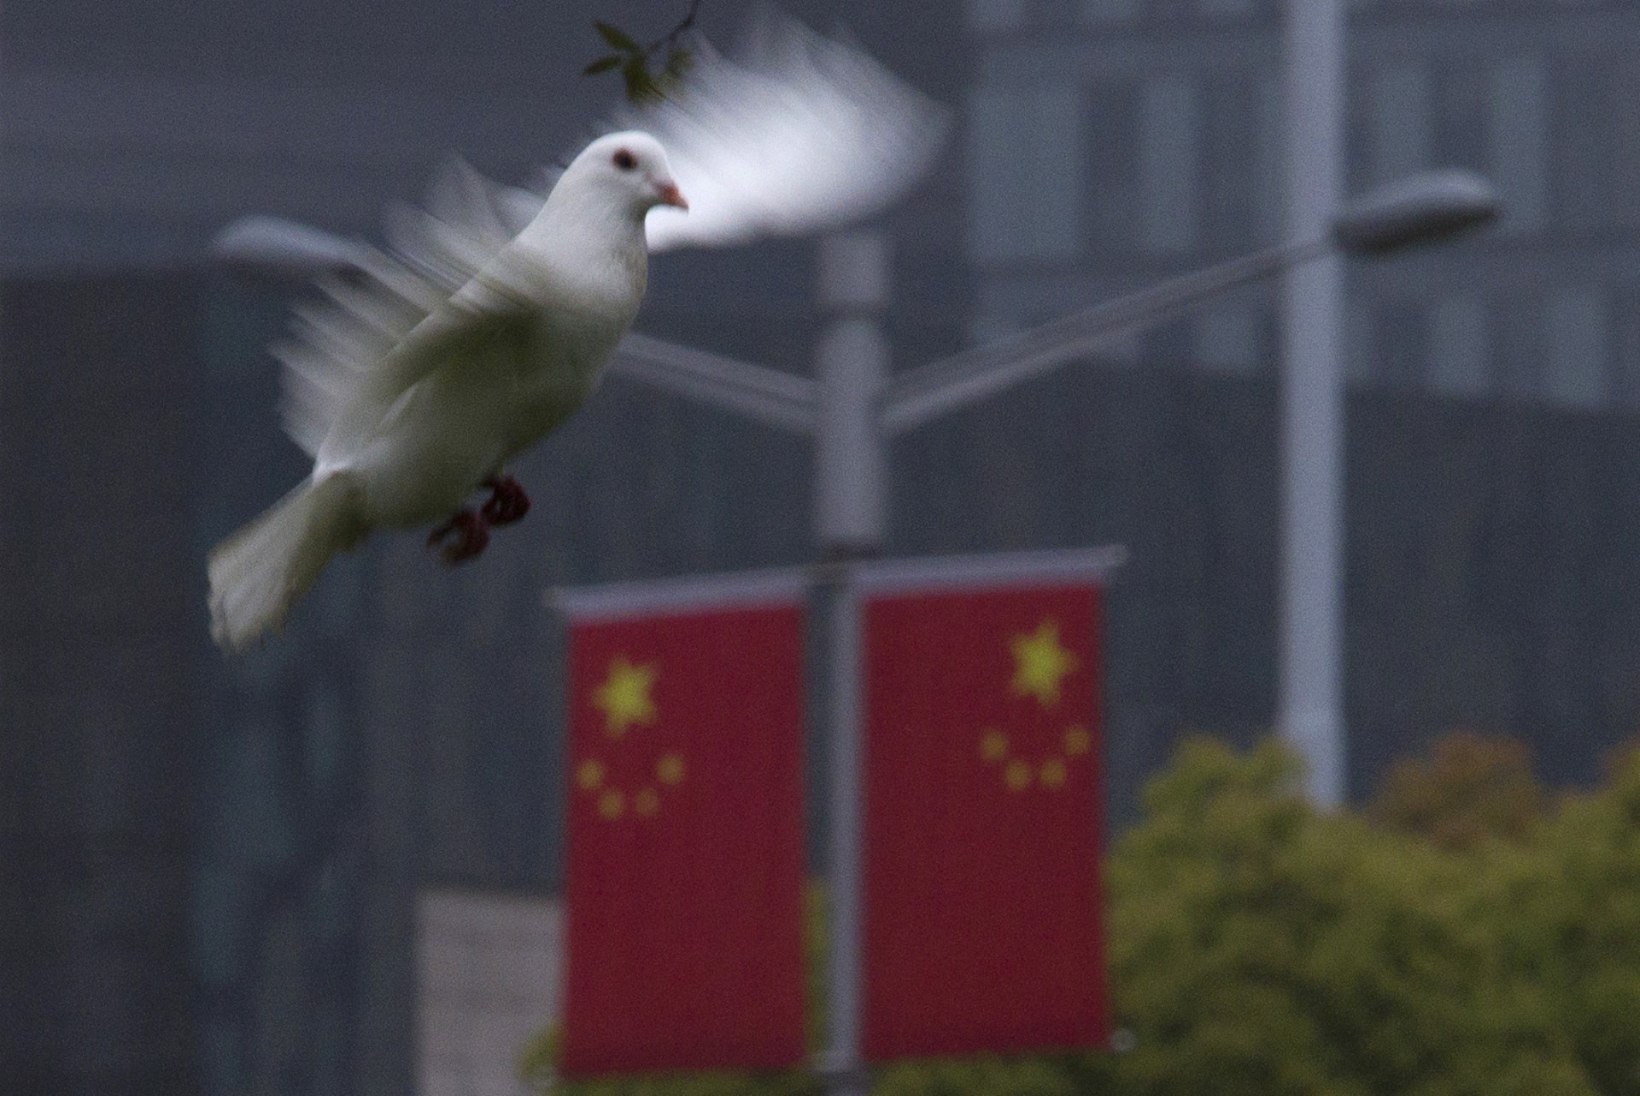 SUUR VEND NÄEB: Hiina jälgib oma kodanikke kõrgtehnoloogiliste droon-lindudega